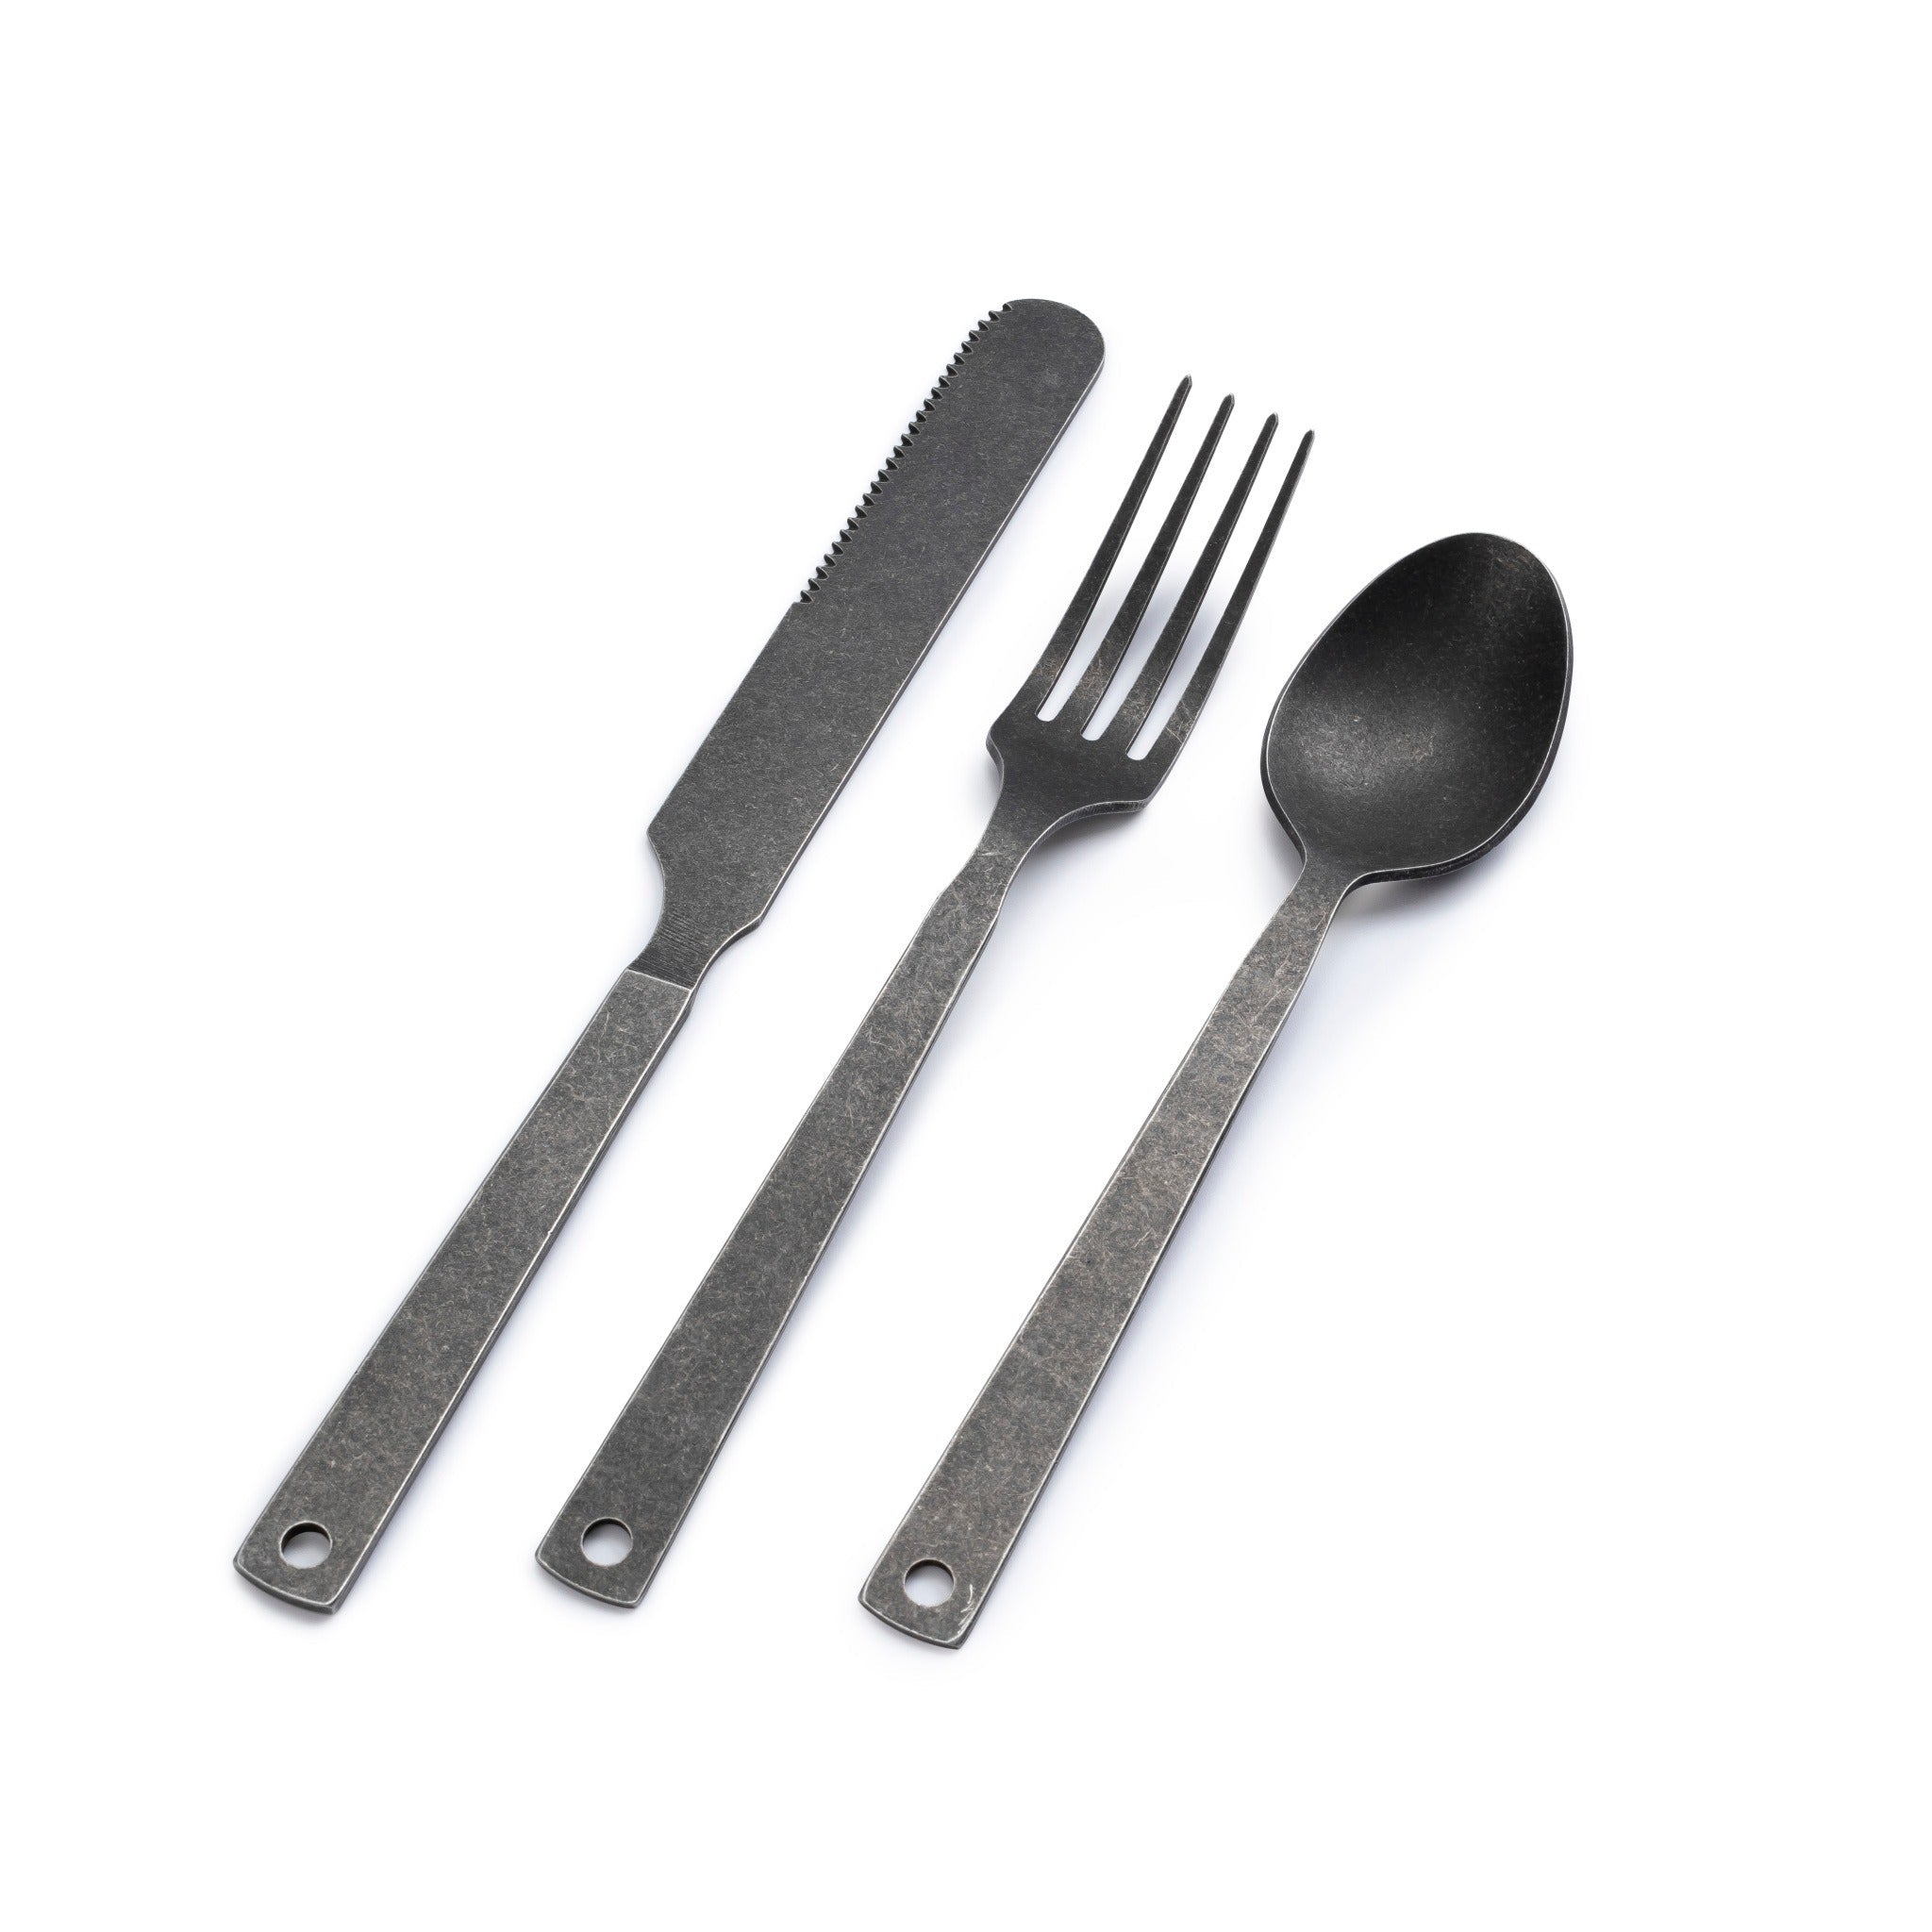 Barebones | Flatware Camping Cutlery Set With Fork, Knife, & Spoon - Matte Black, Cutlery, Barebones, Defiance Outdoor Gear Co.